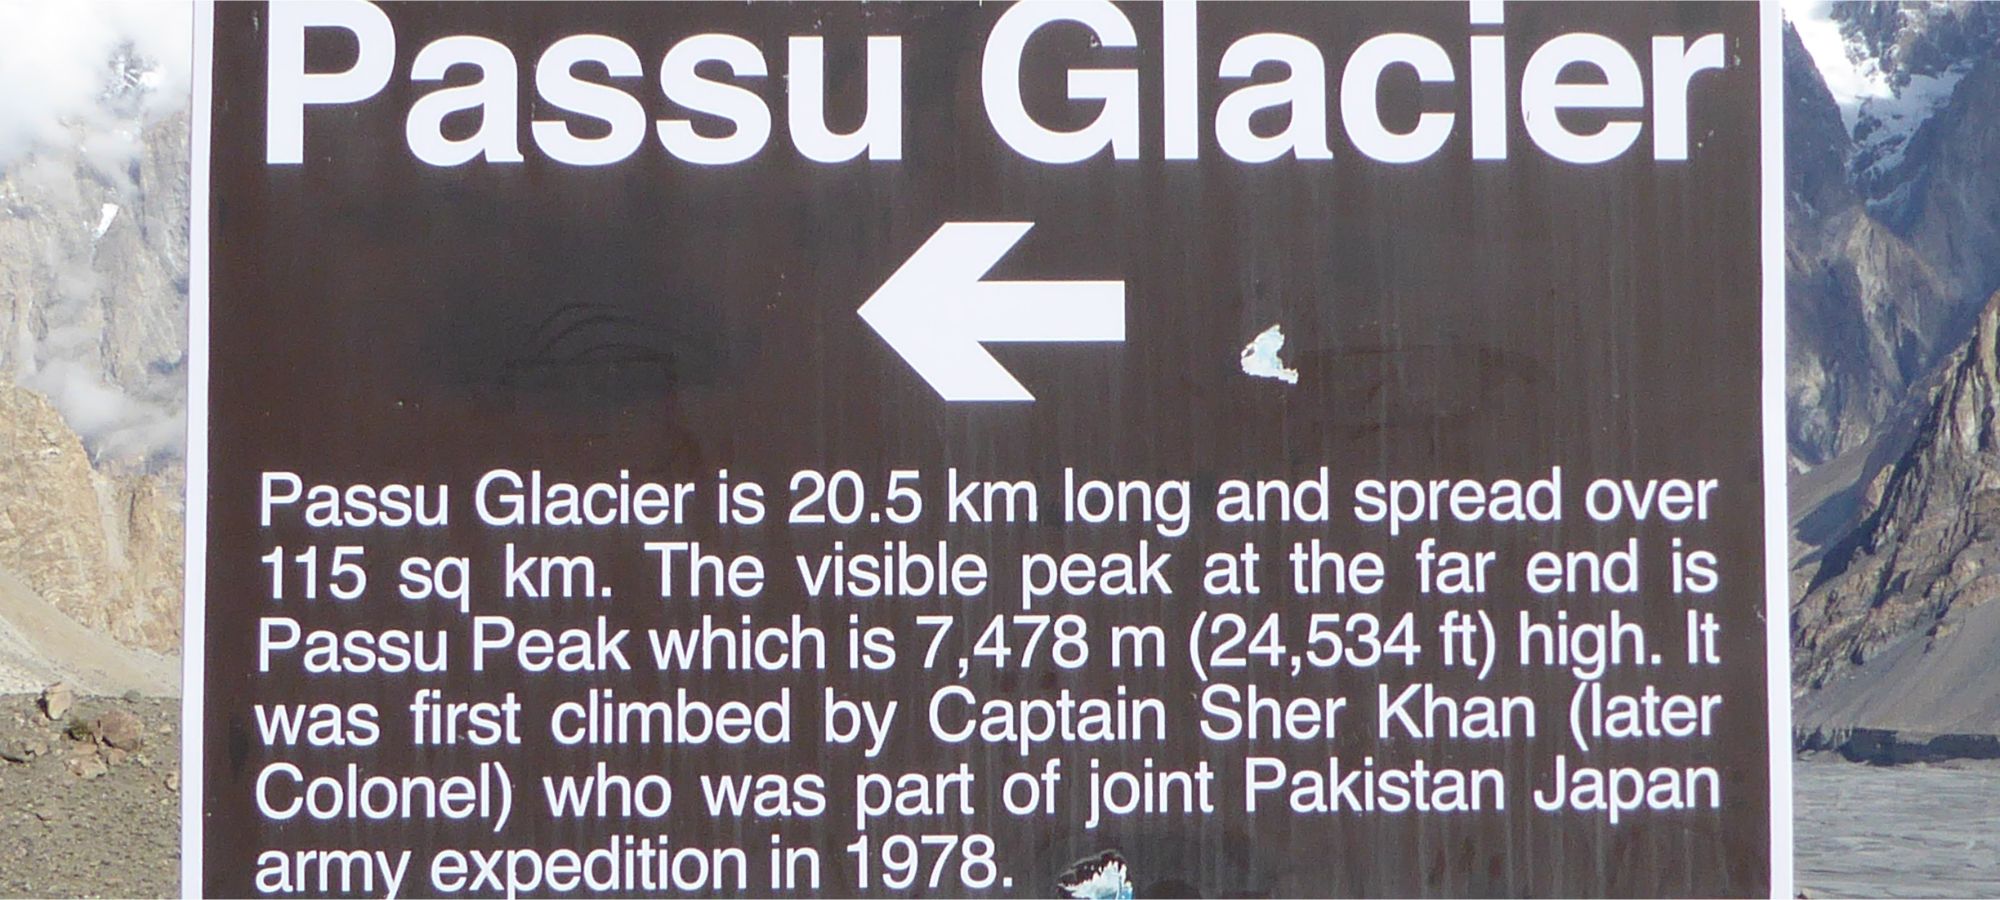 Passu Glacier 